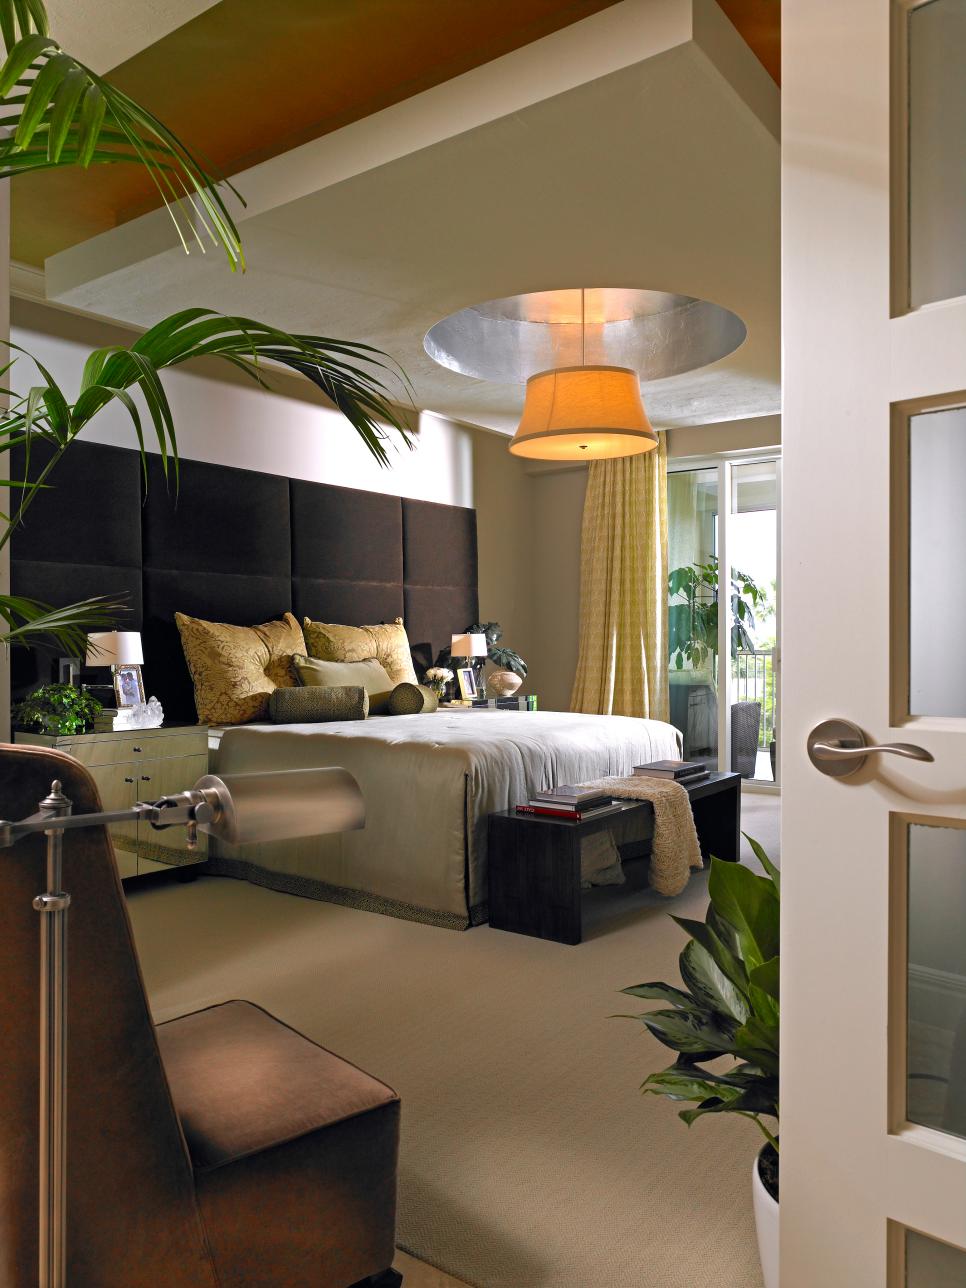 Modern Master Bedroom With Elegant Pendant Light | HGTV